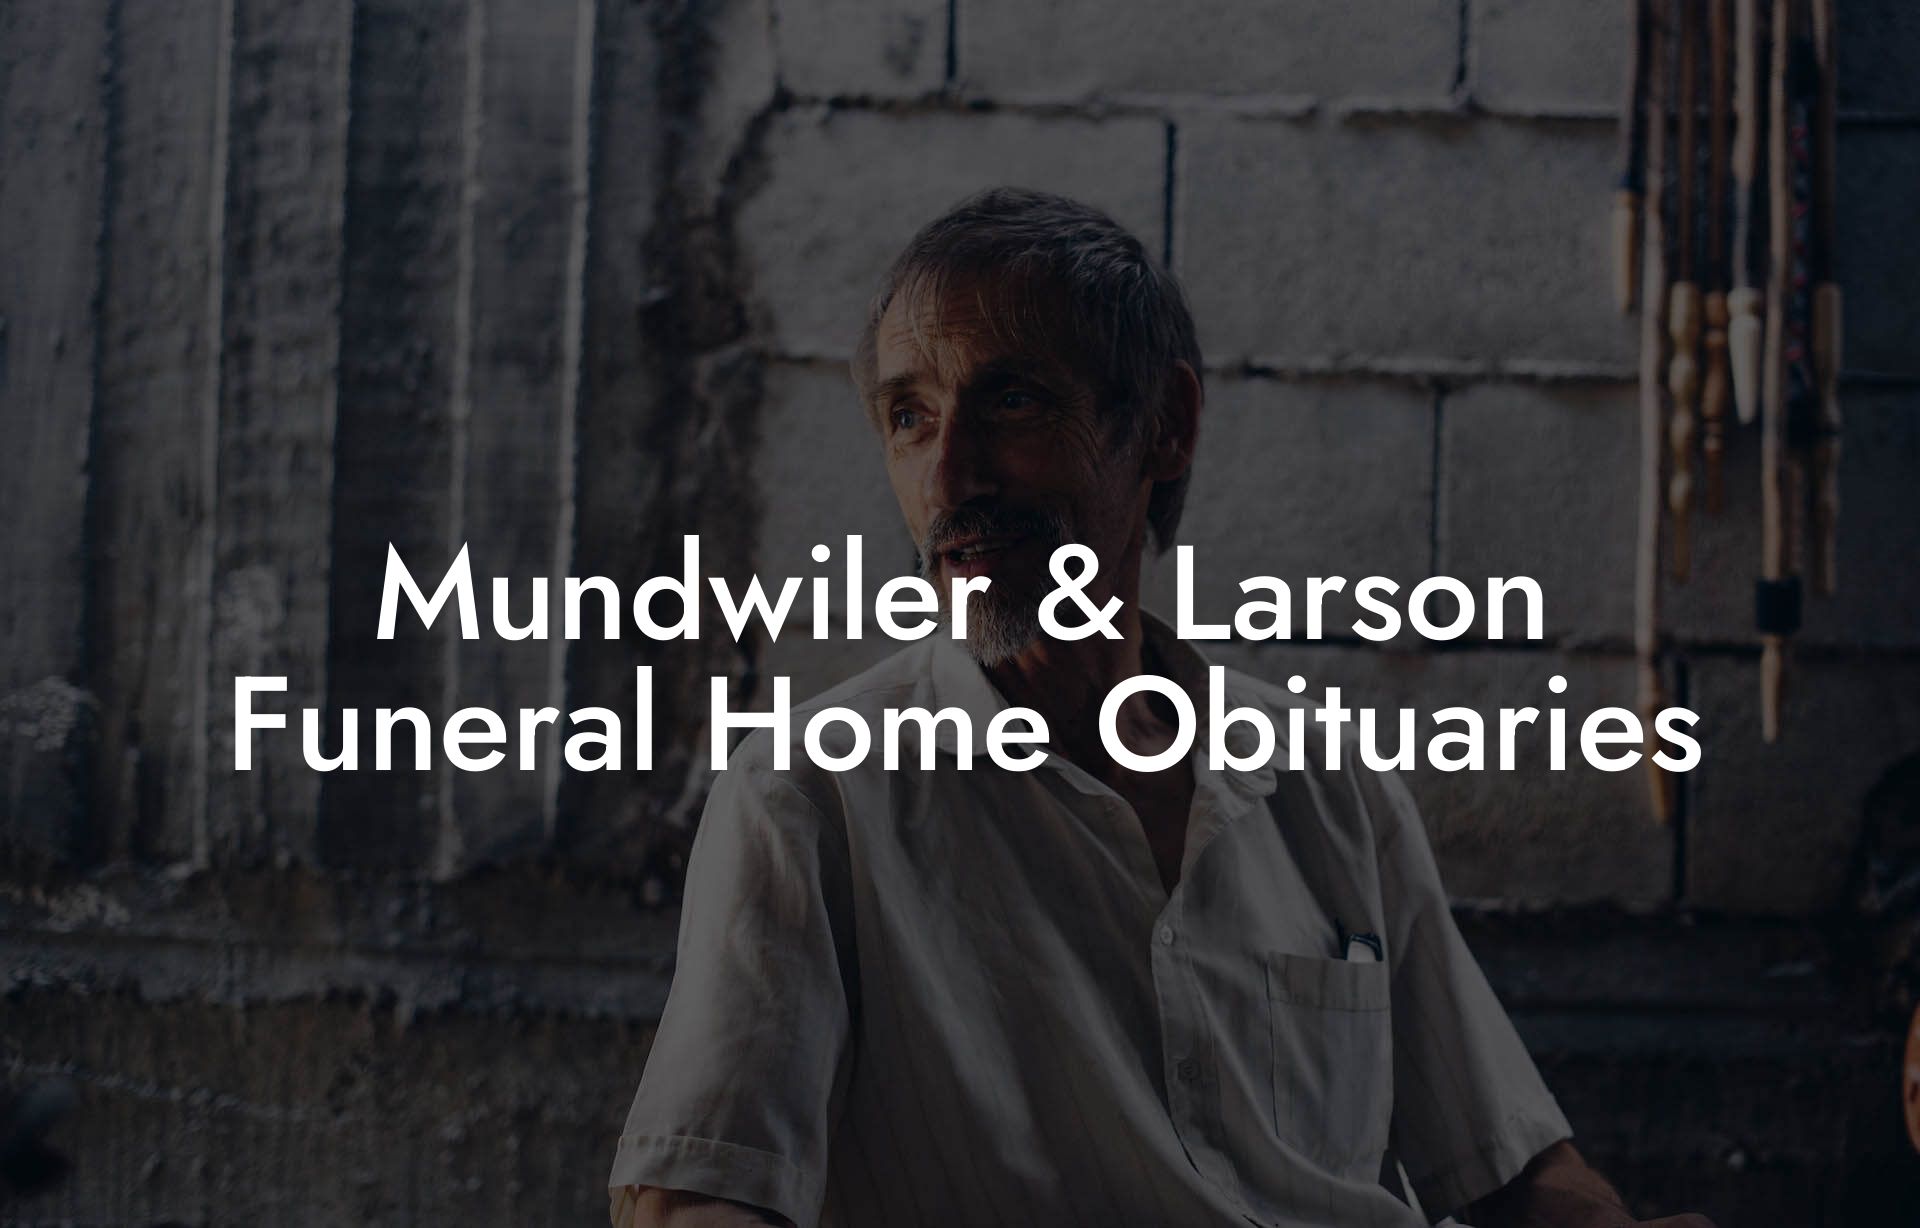 Mundwiler & Larson Funeral Home Obituaries